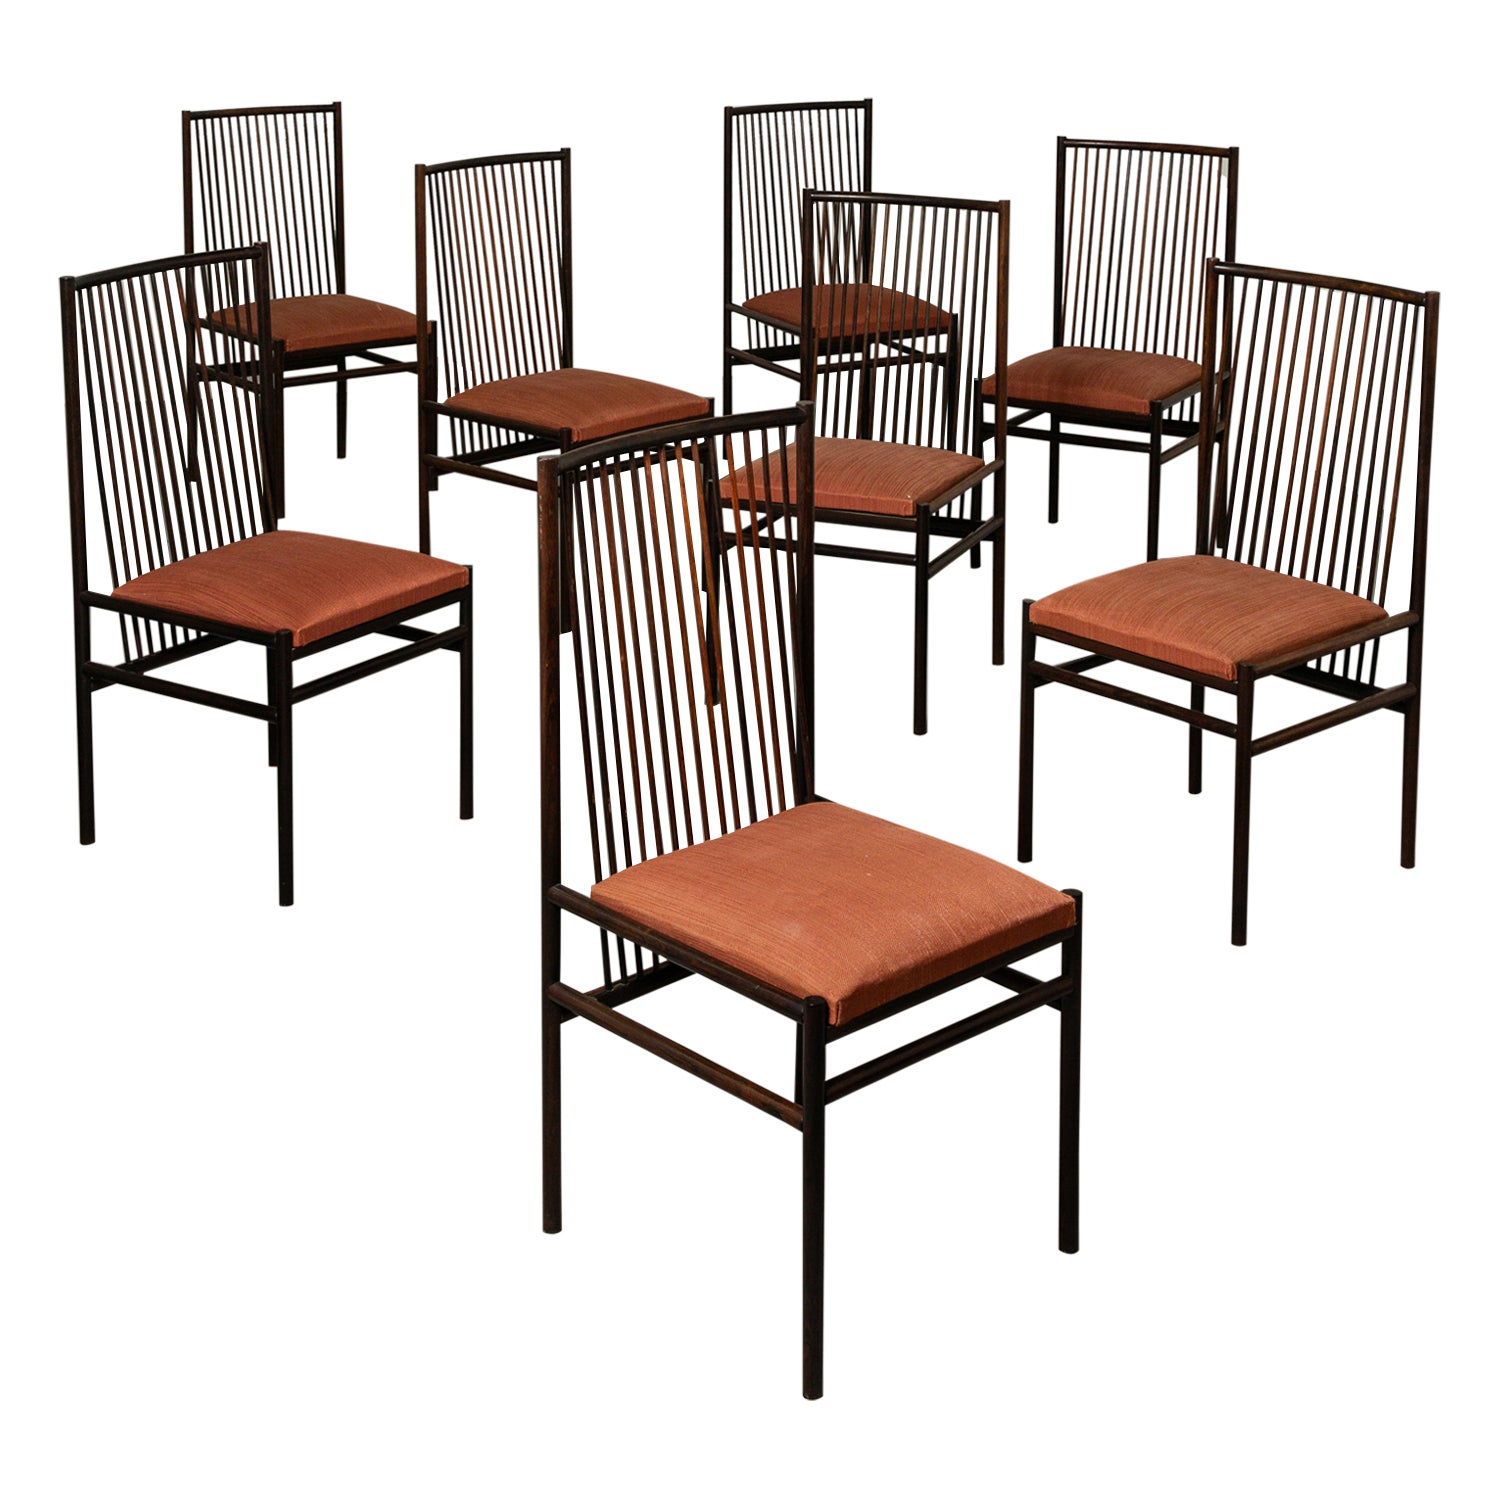 Rare set of eight Estrutural Chairs by Joaquim Tenreiro, 1947